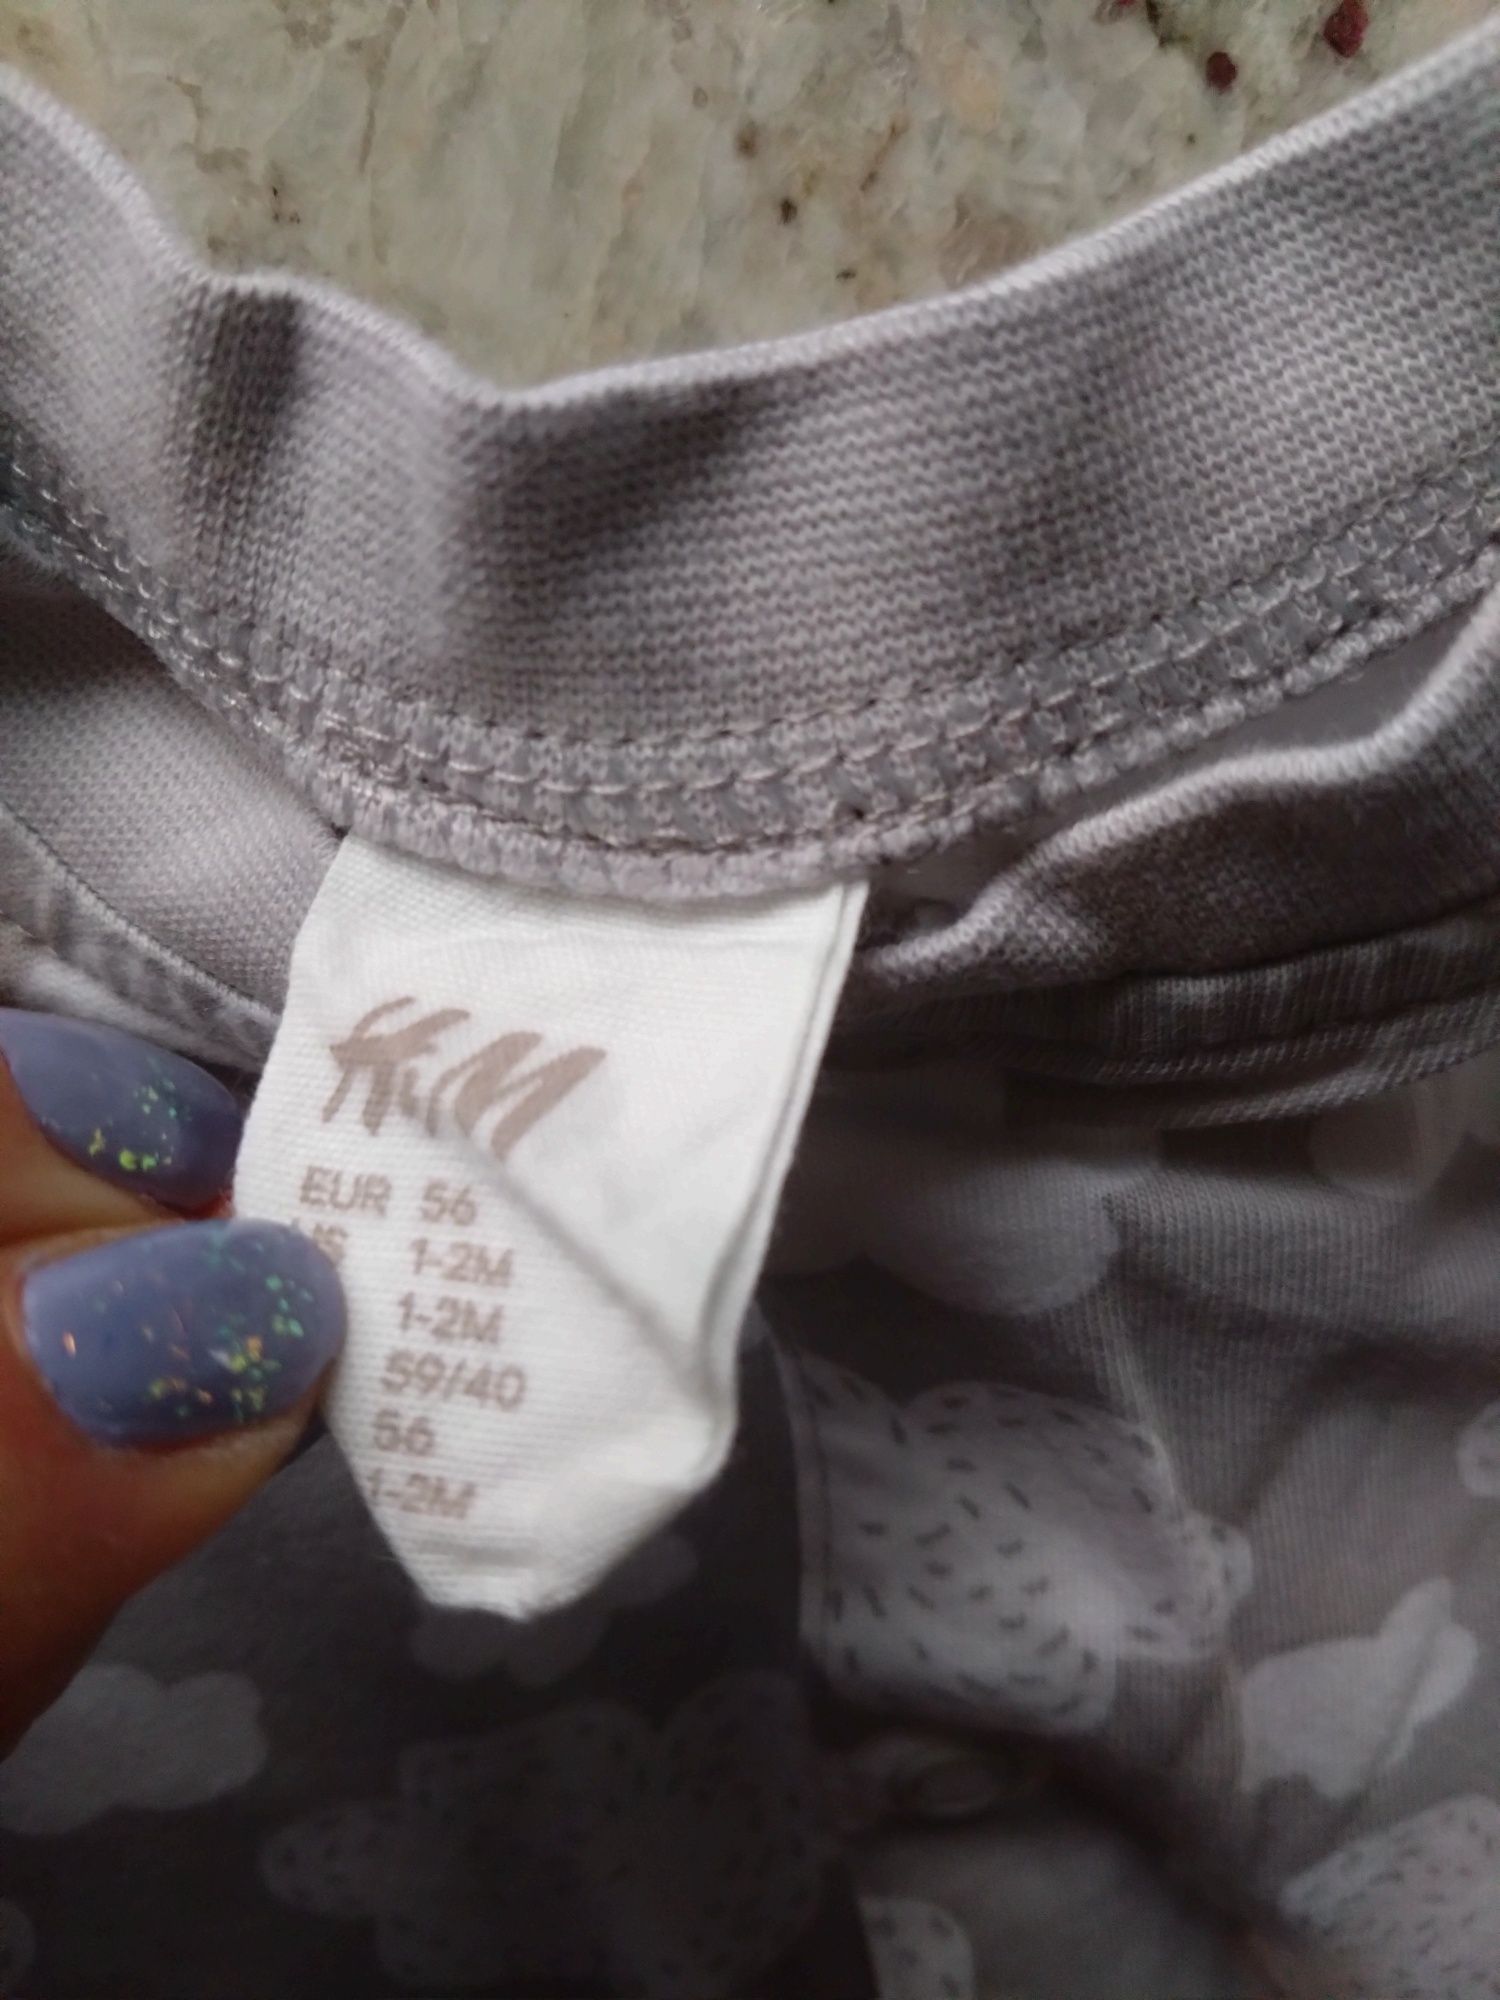 Rampers piżamka hm h&m 56 wyprawka dla niemowlaka newborn szary chmurk